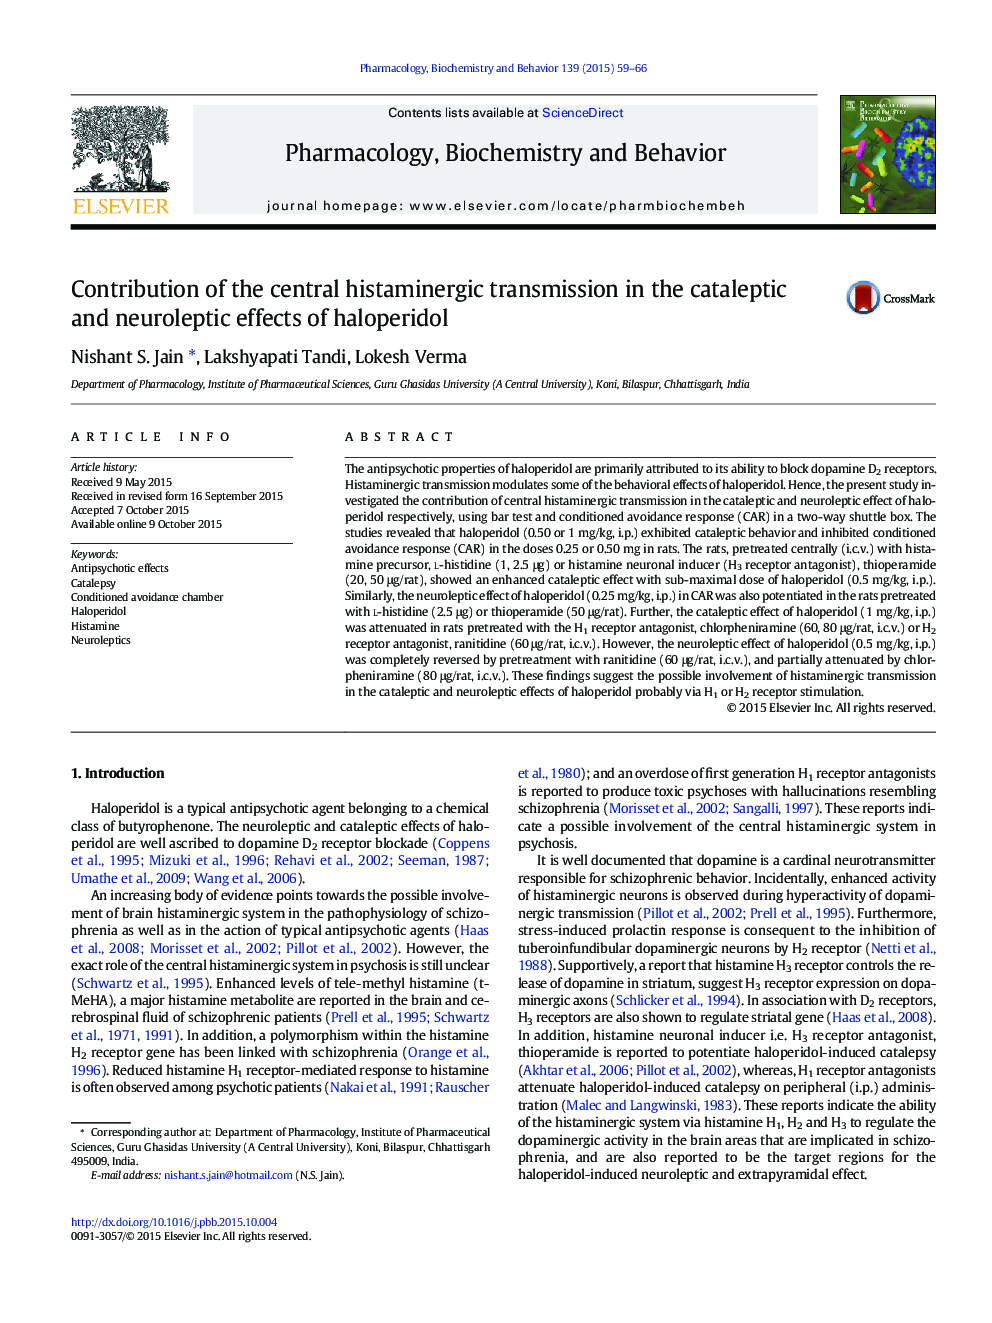 نقش انتقال هیستمینیرژیک مرکزی در اثرات کاتالپتیک و نوروپاتیک هالوپریدول 